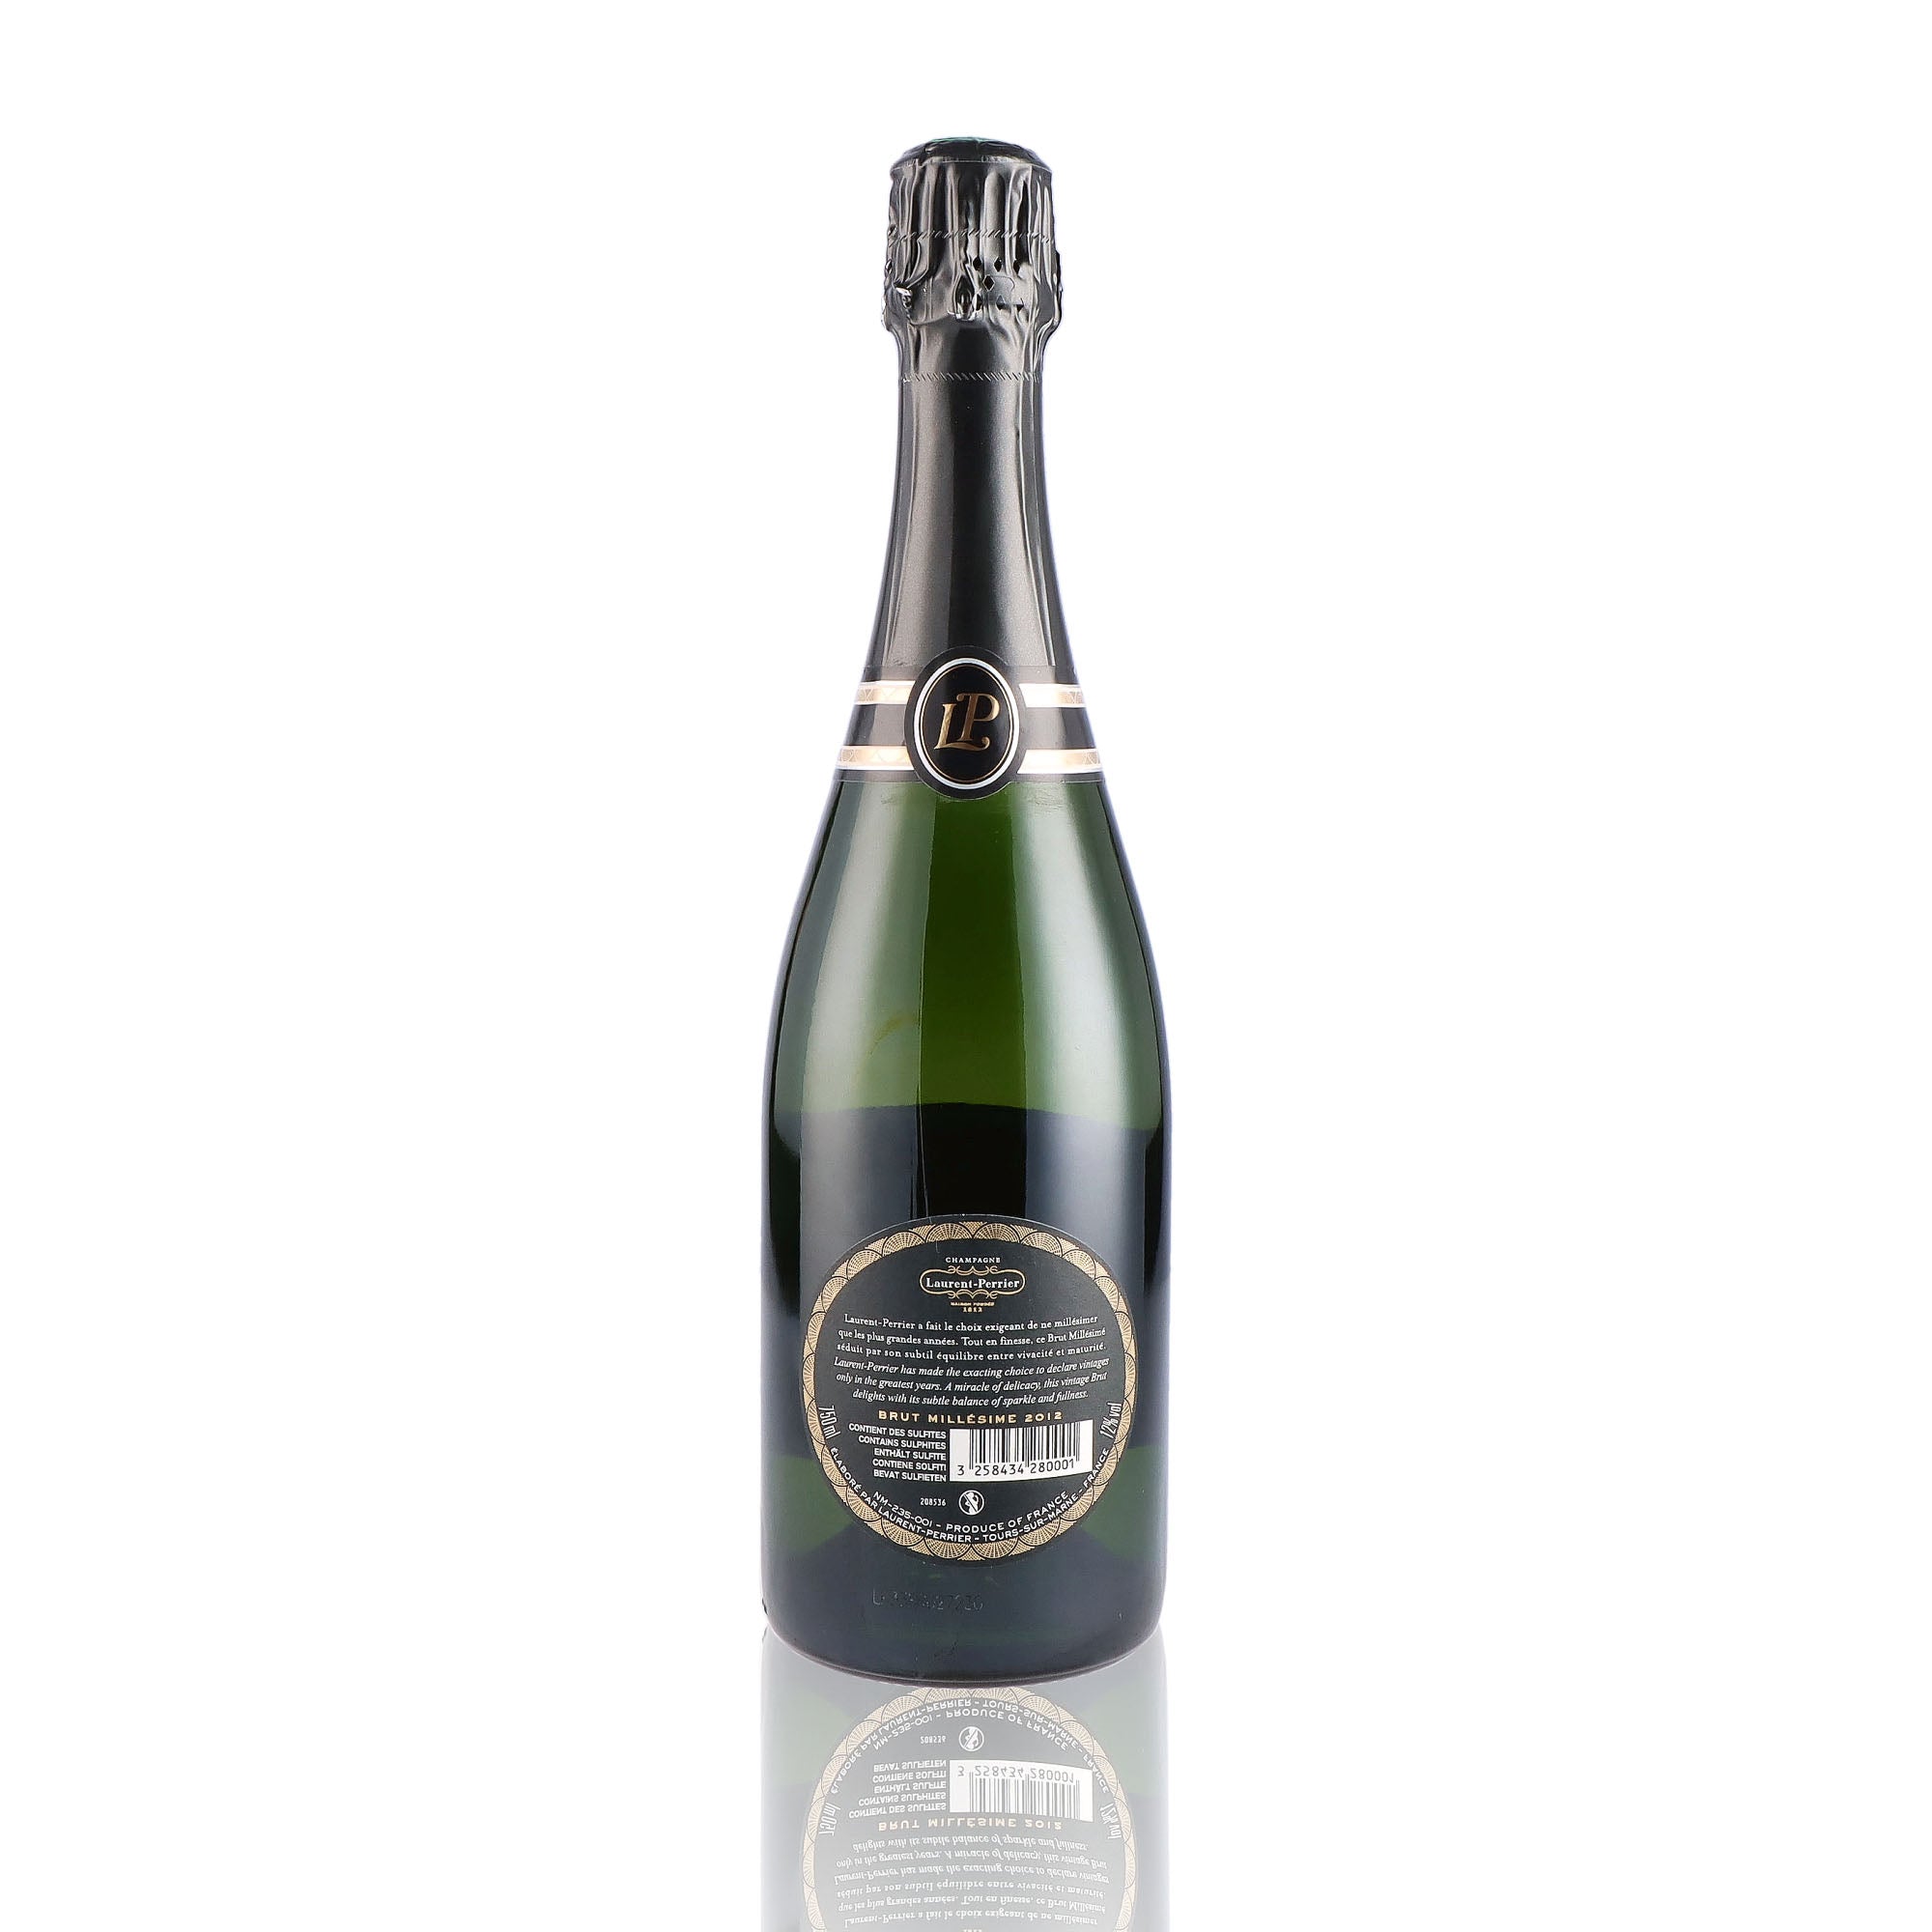 Une bouteille de champagne de la marque Laurent Perrier, de type brut, millésime 2012.